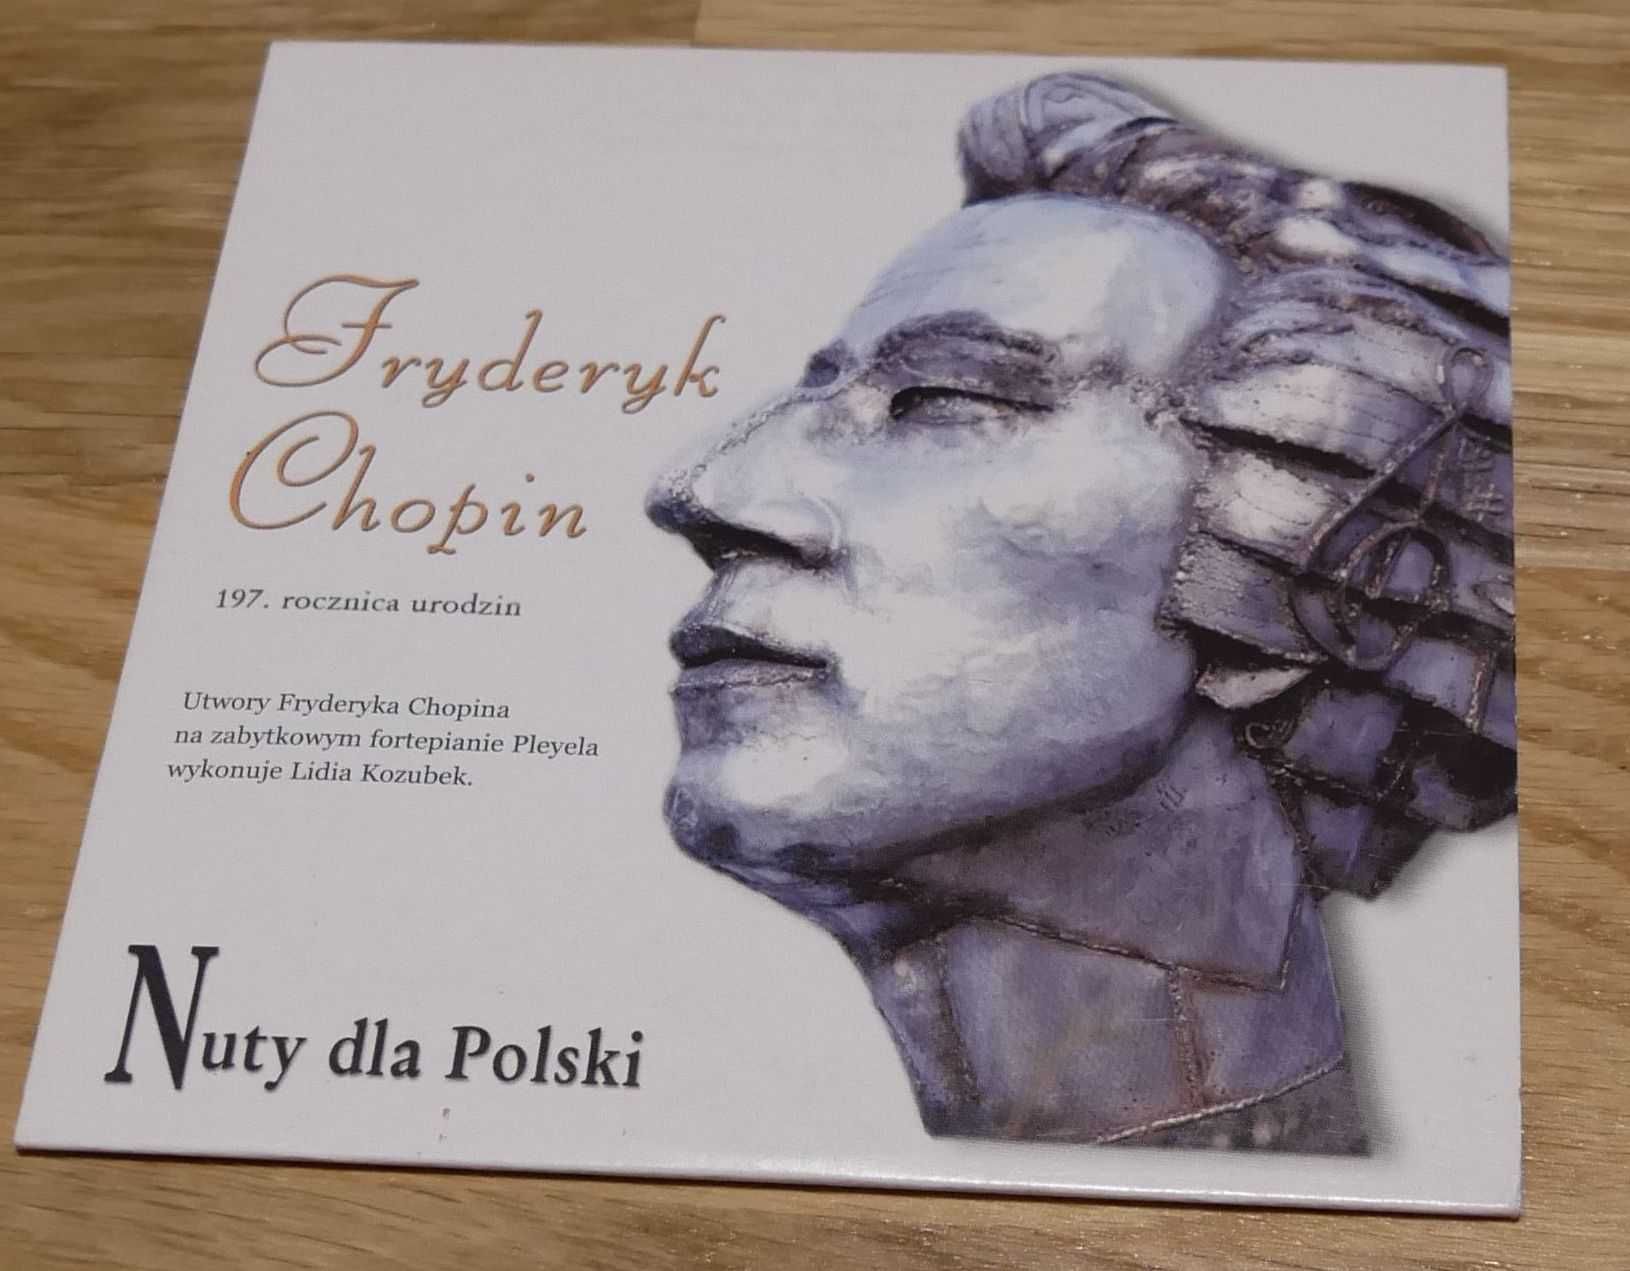 Fryderyk Chopin 197 rocznica Nuty dla Polski płyta CD